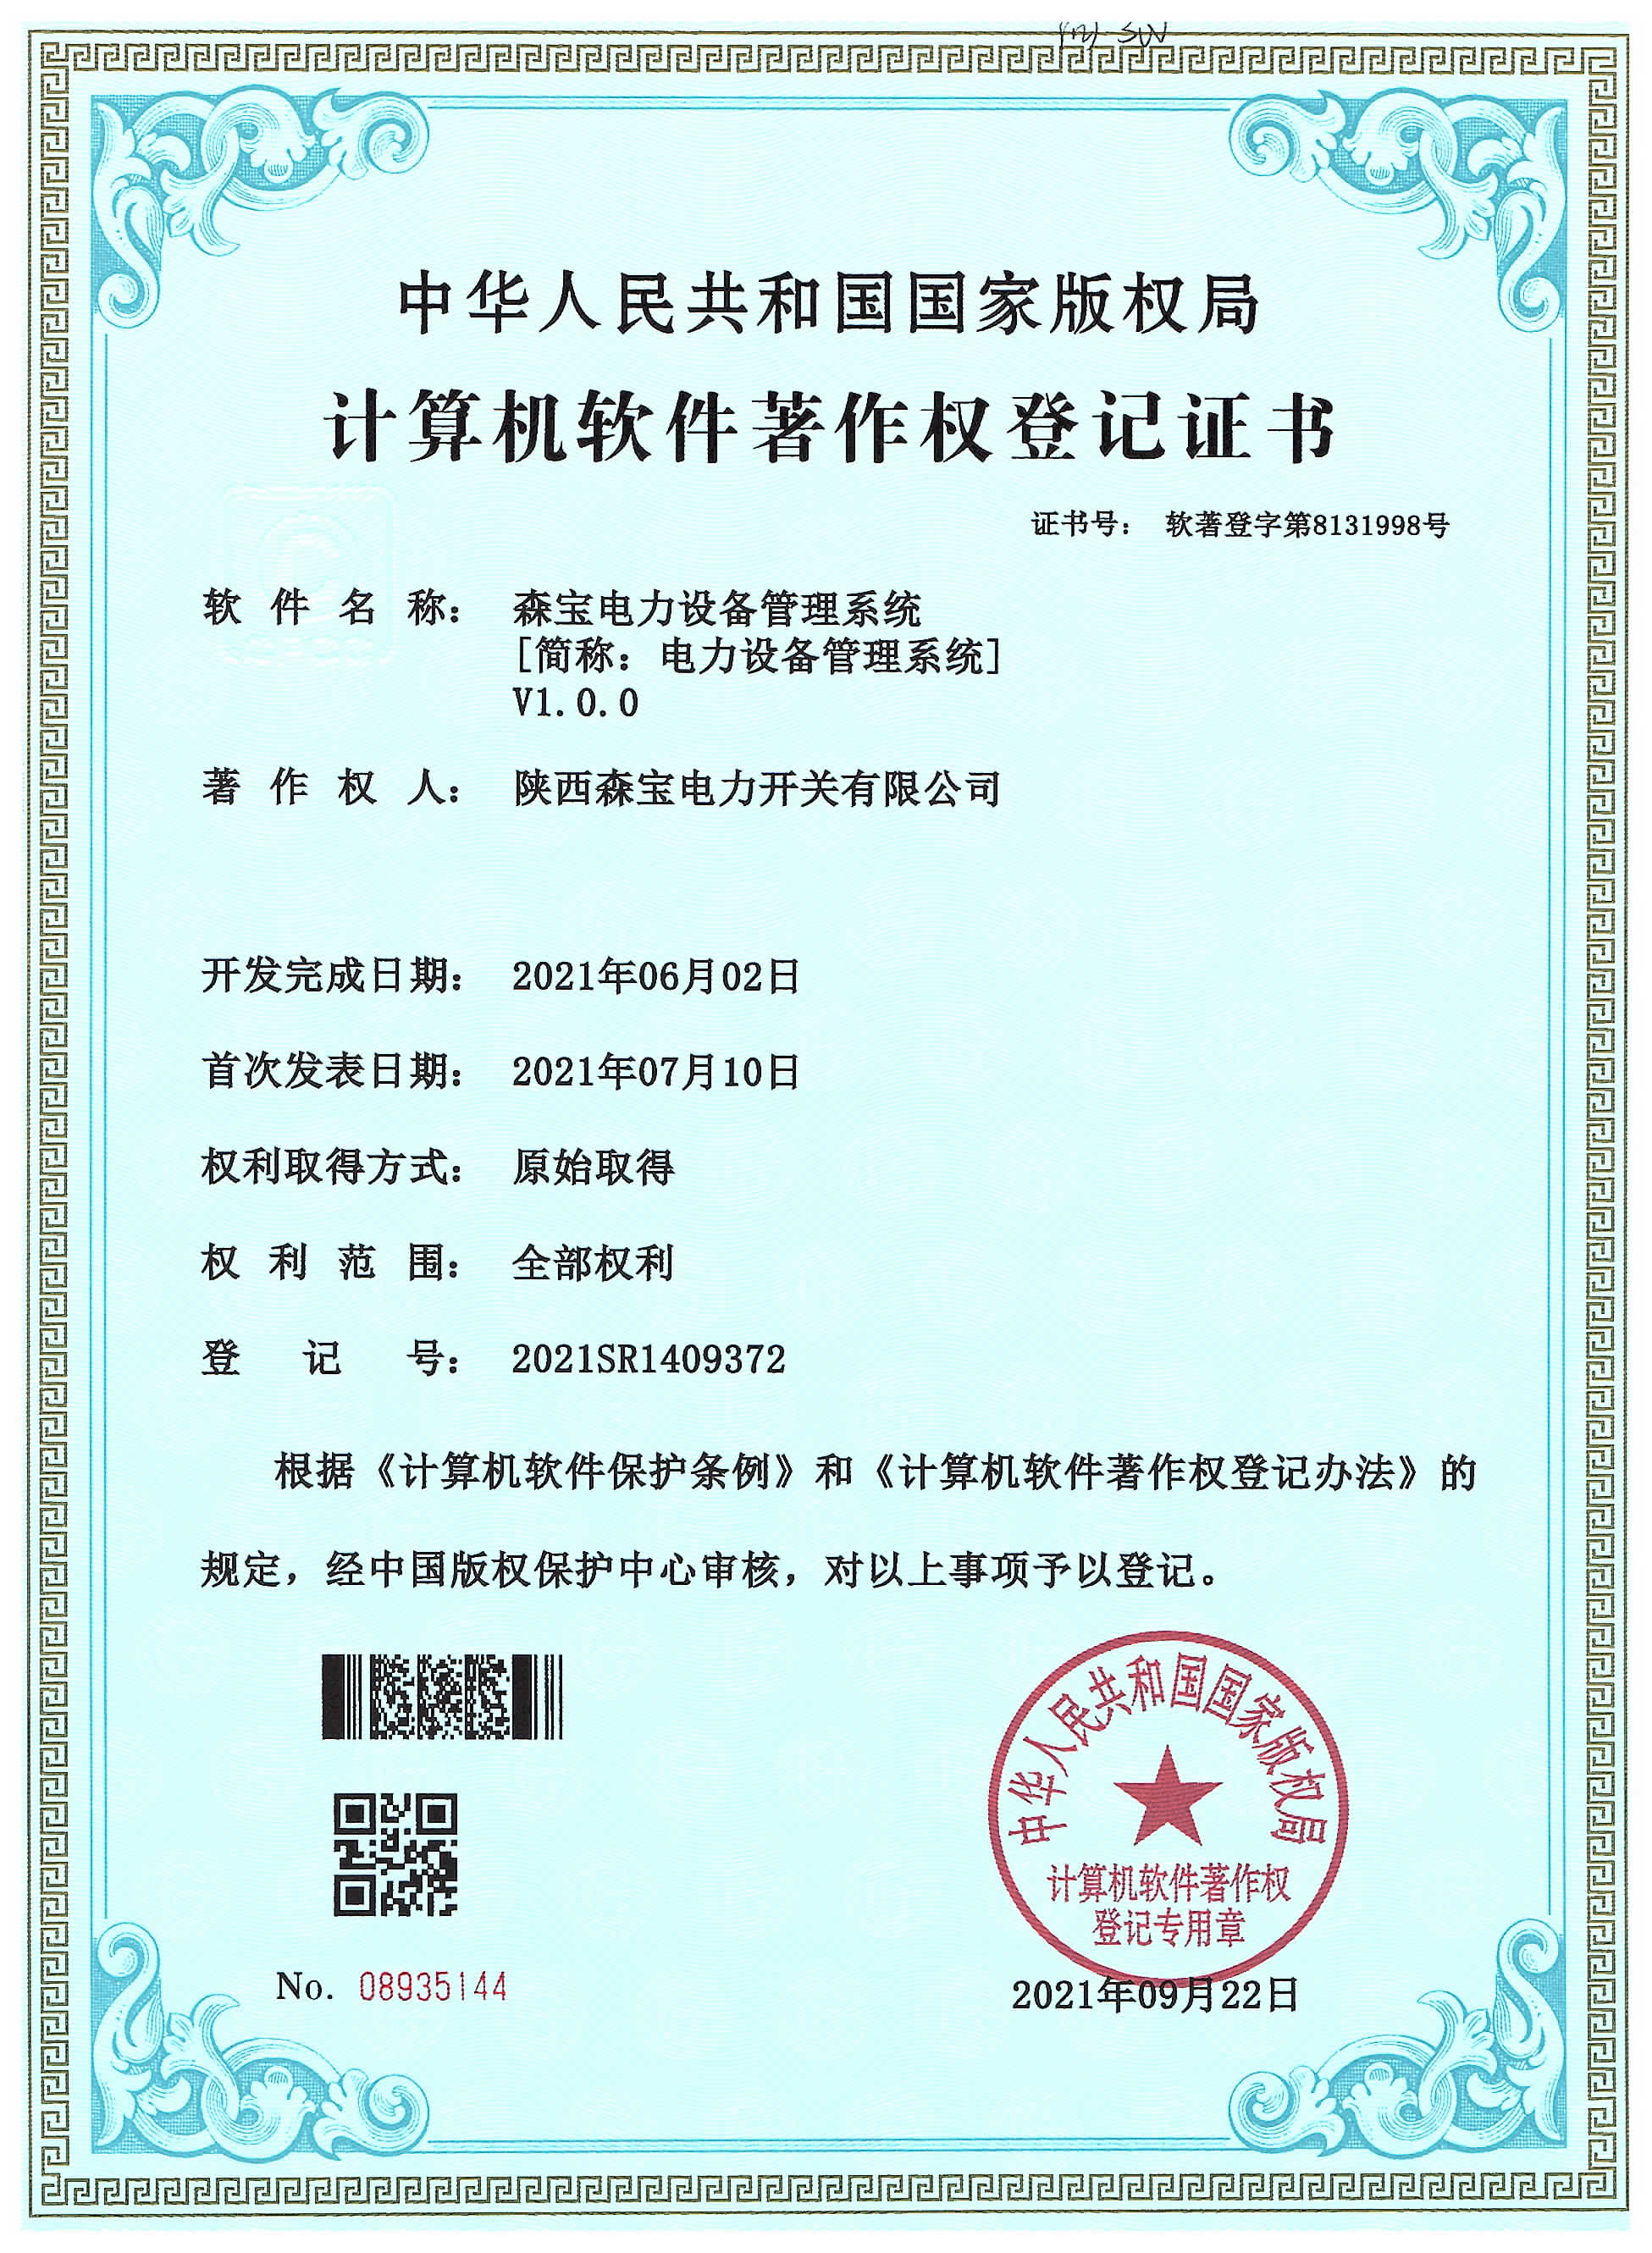 电力设备管理系统软件著作权登记证书(图1)